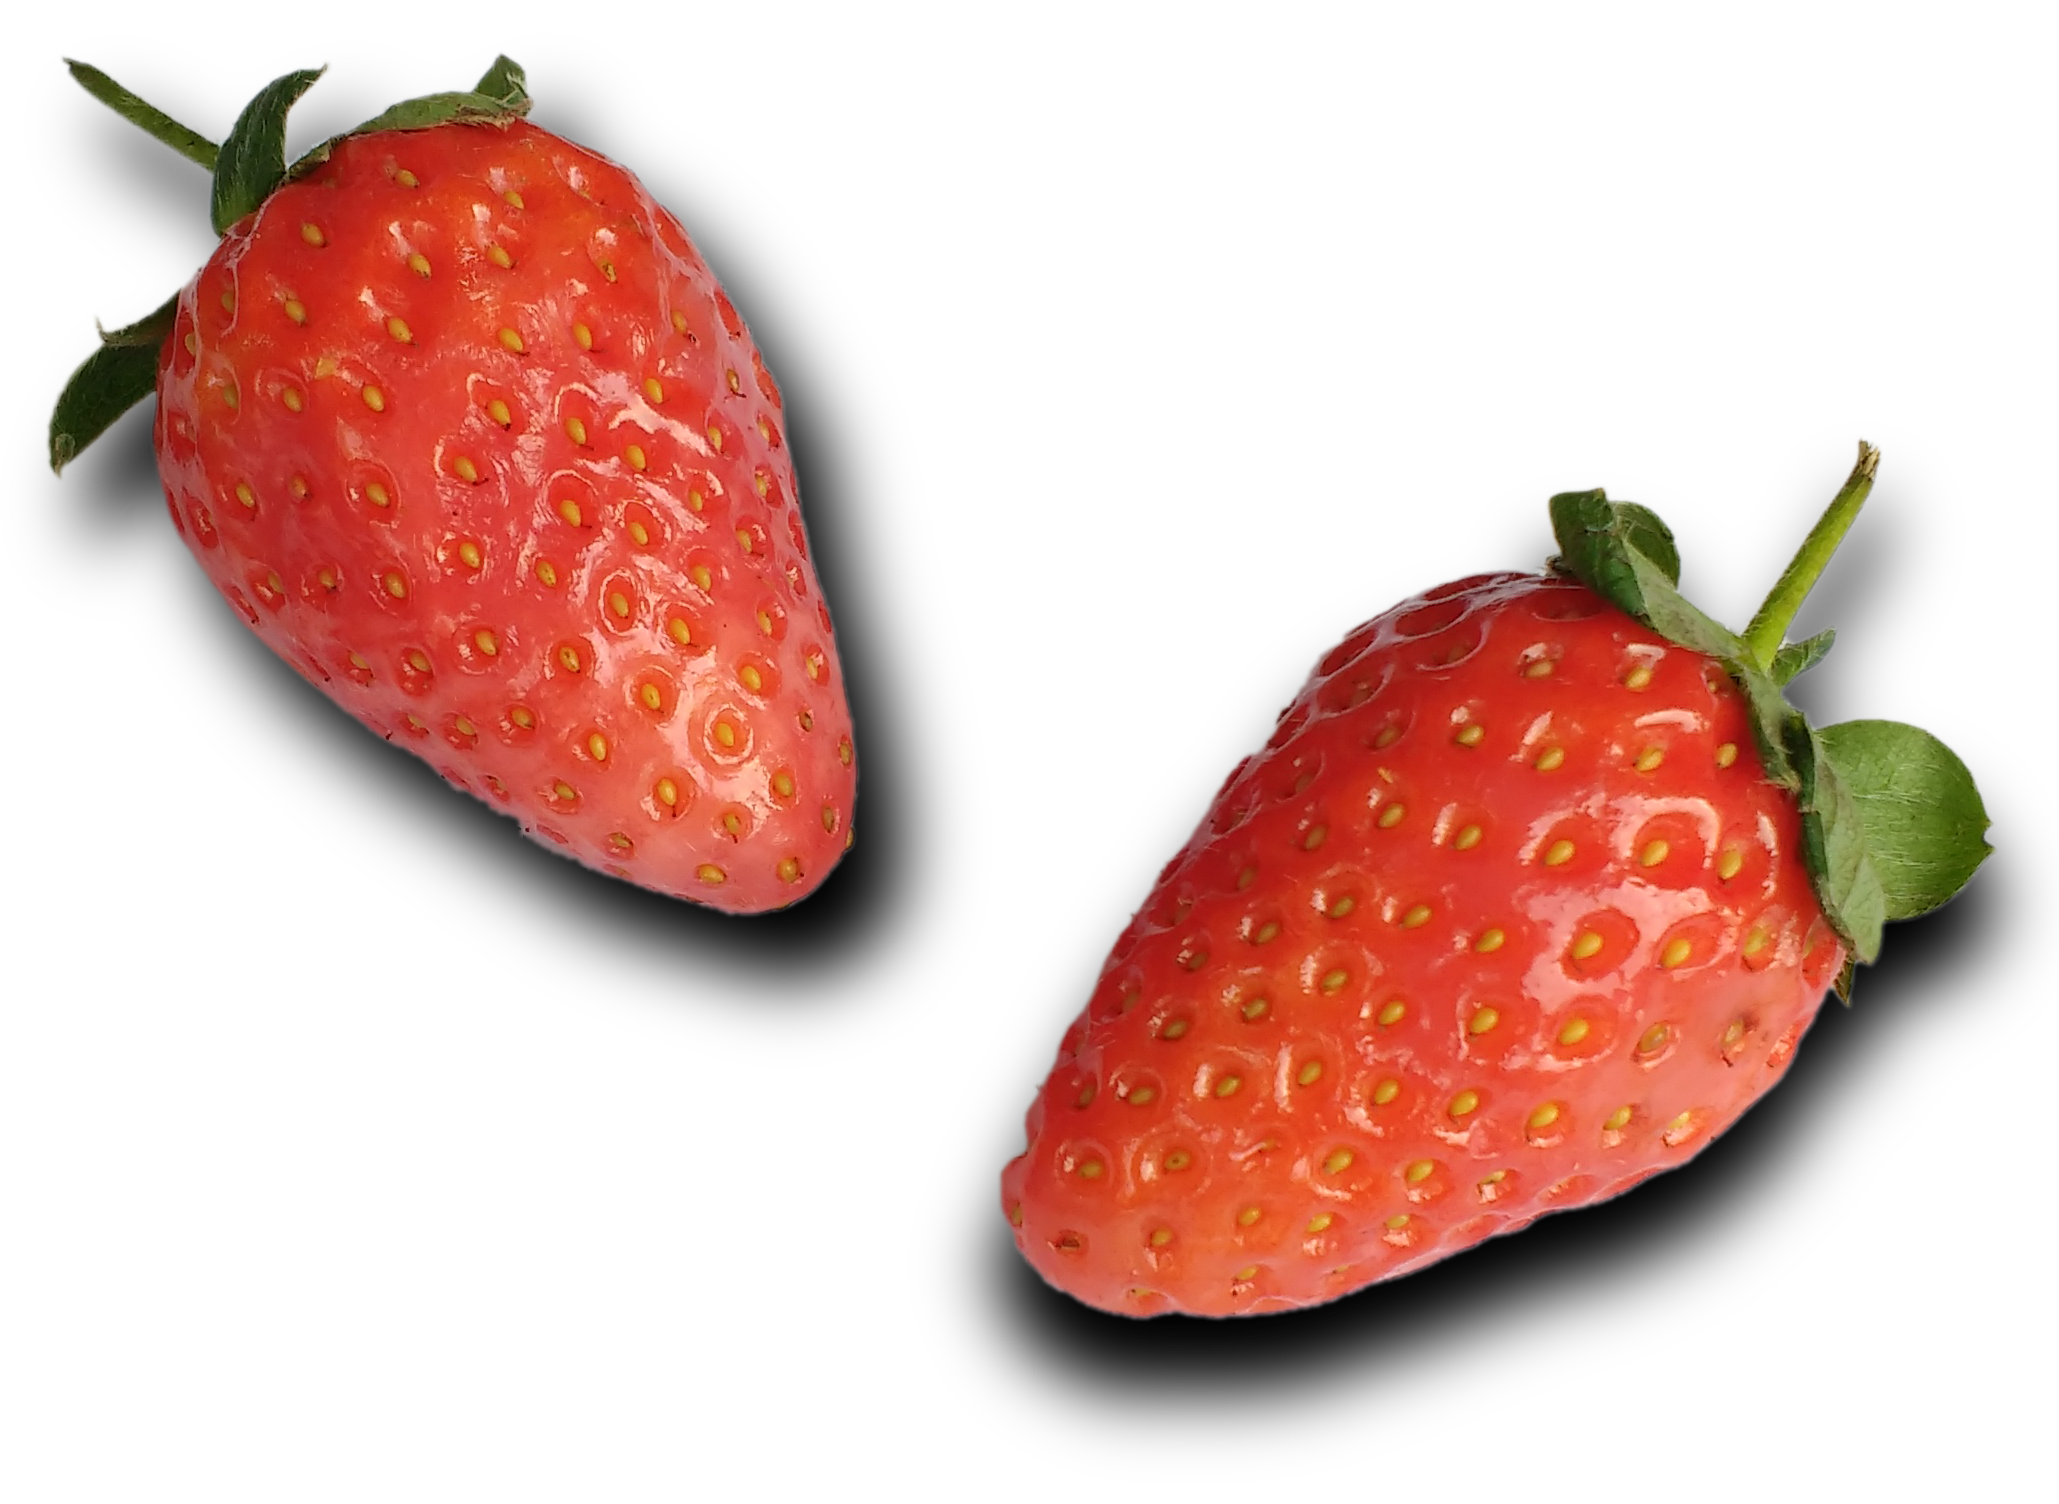 strawberries: 5 layers